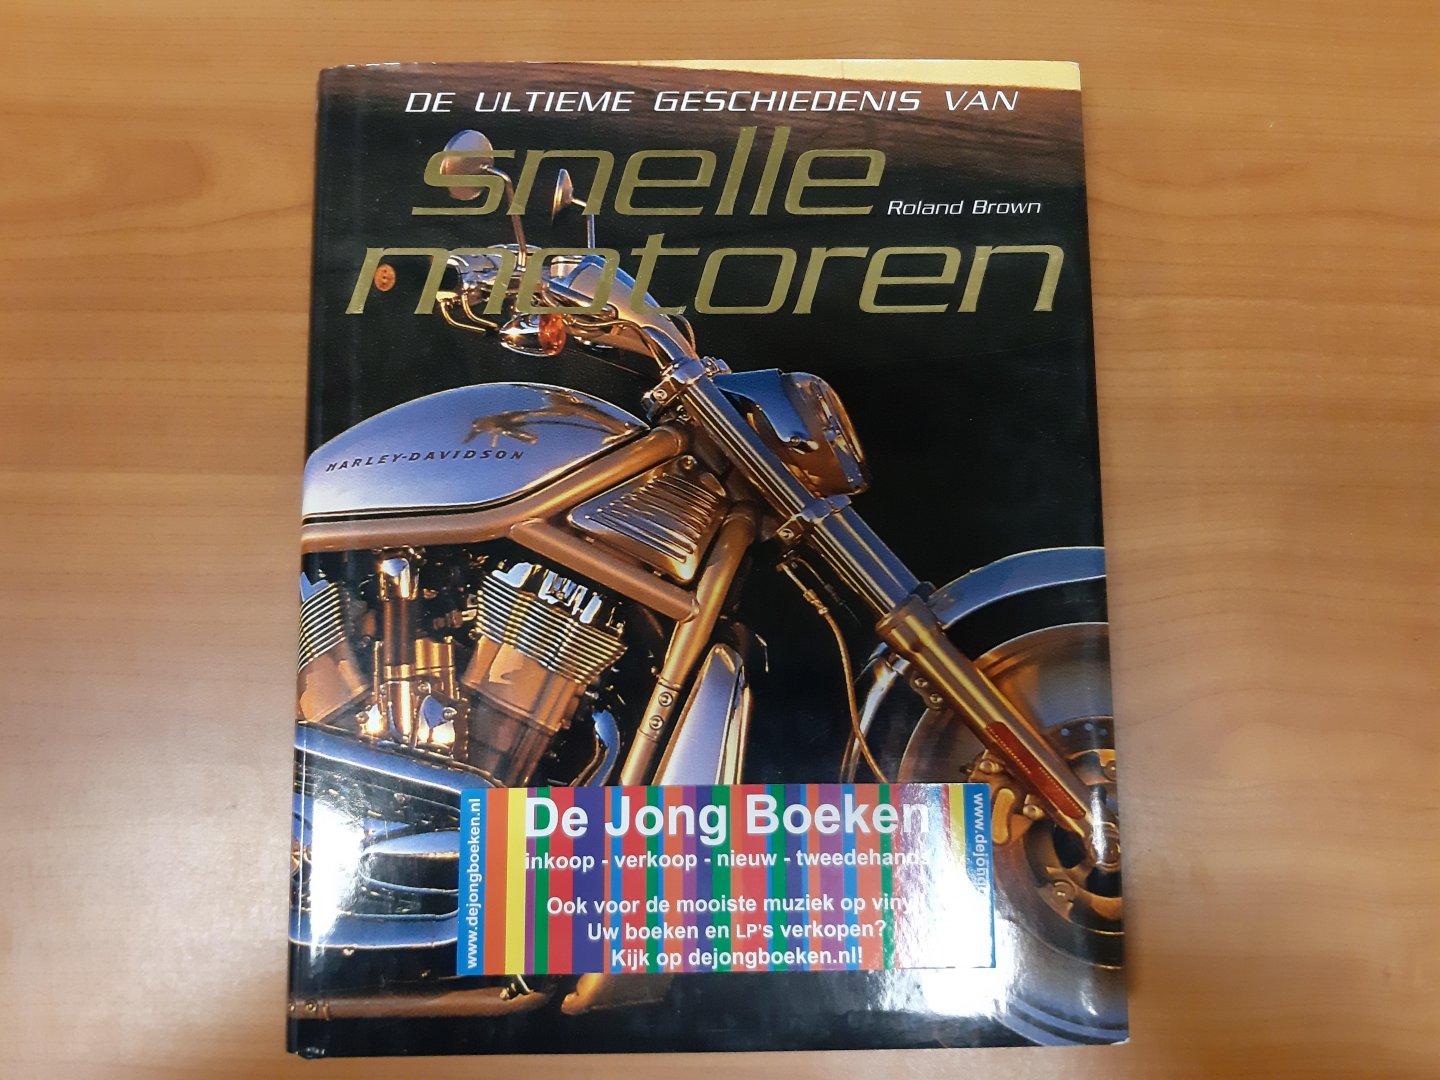 Brown, Roland - Snelle motoren / de ultieme geschiedenis van